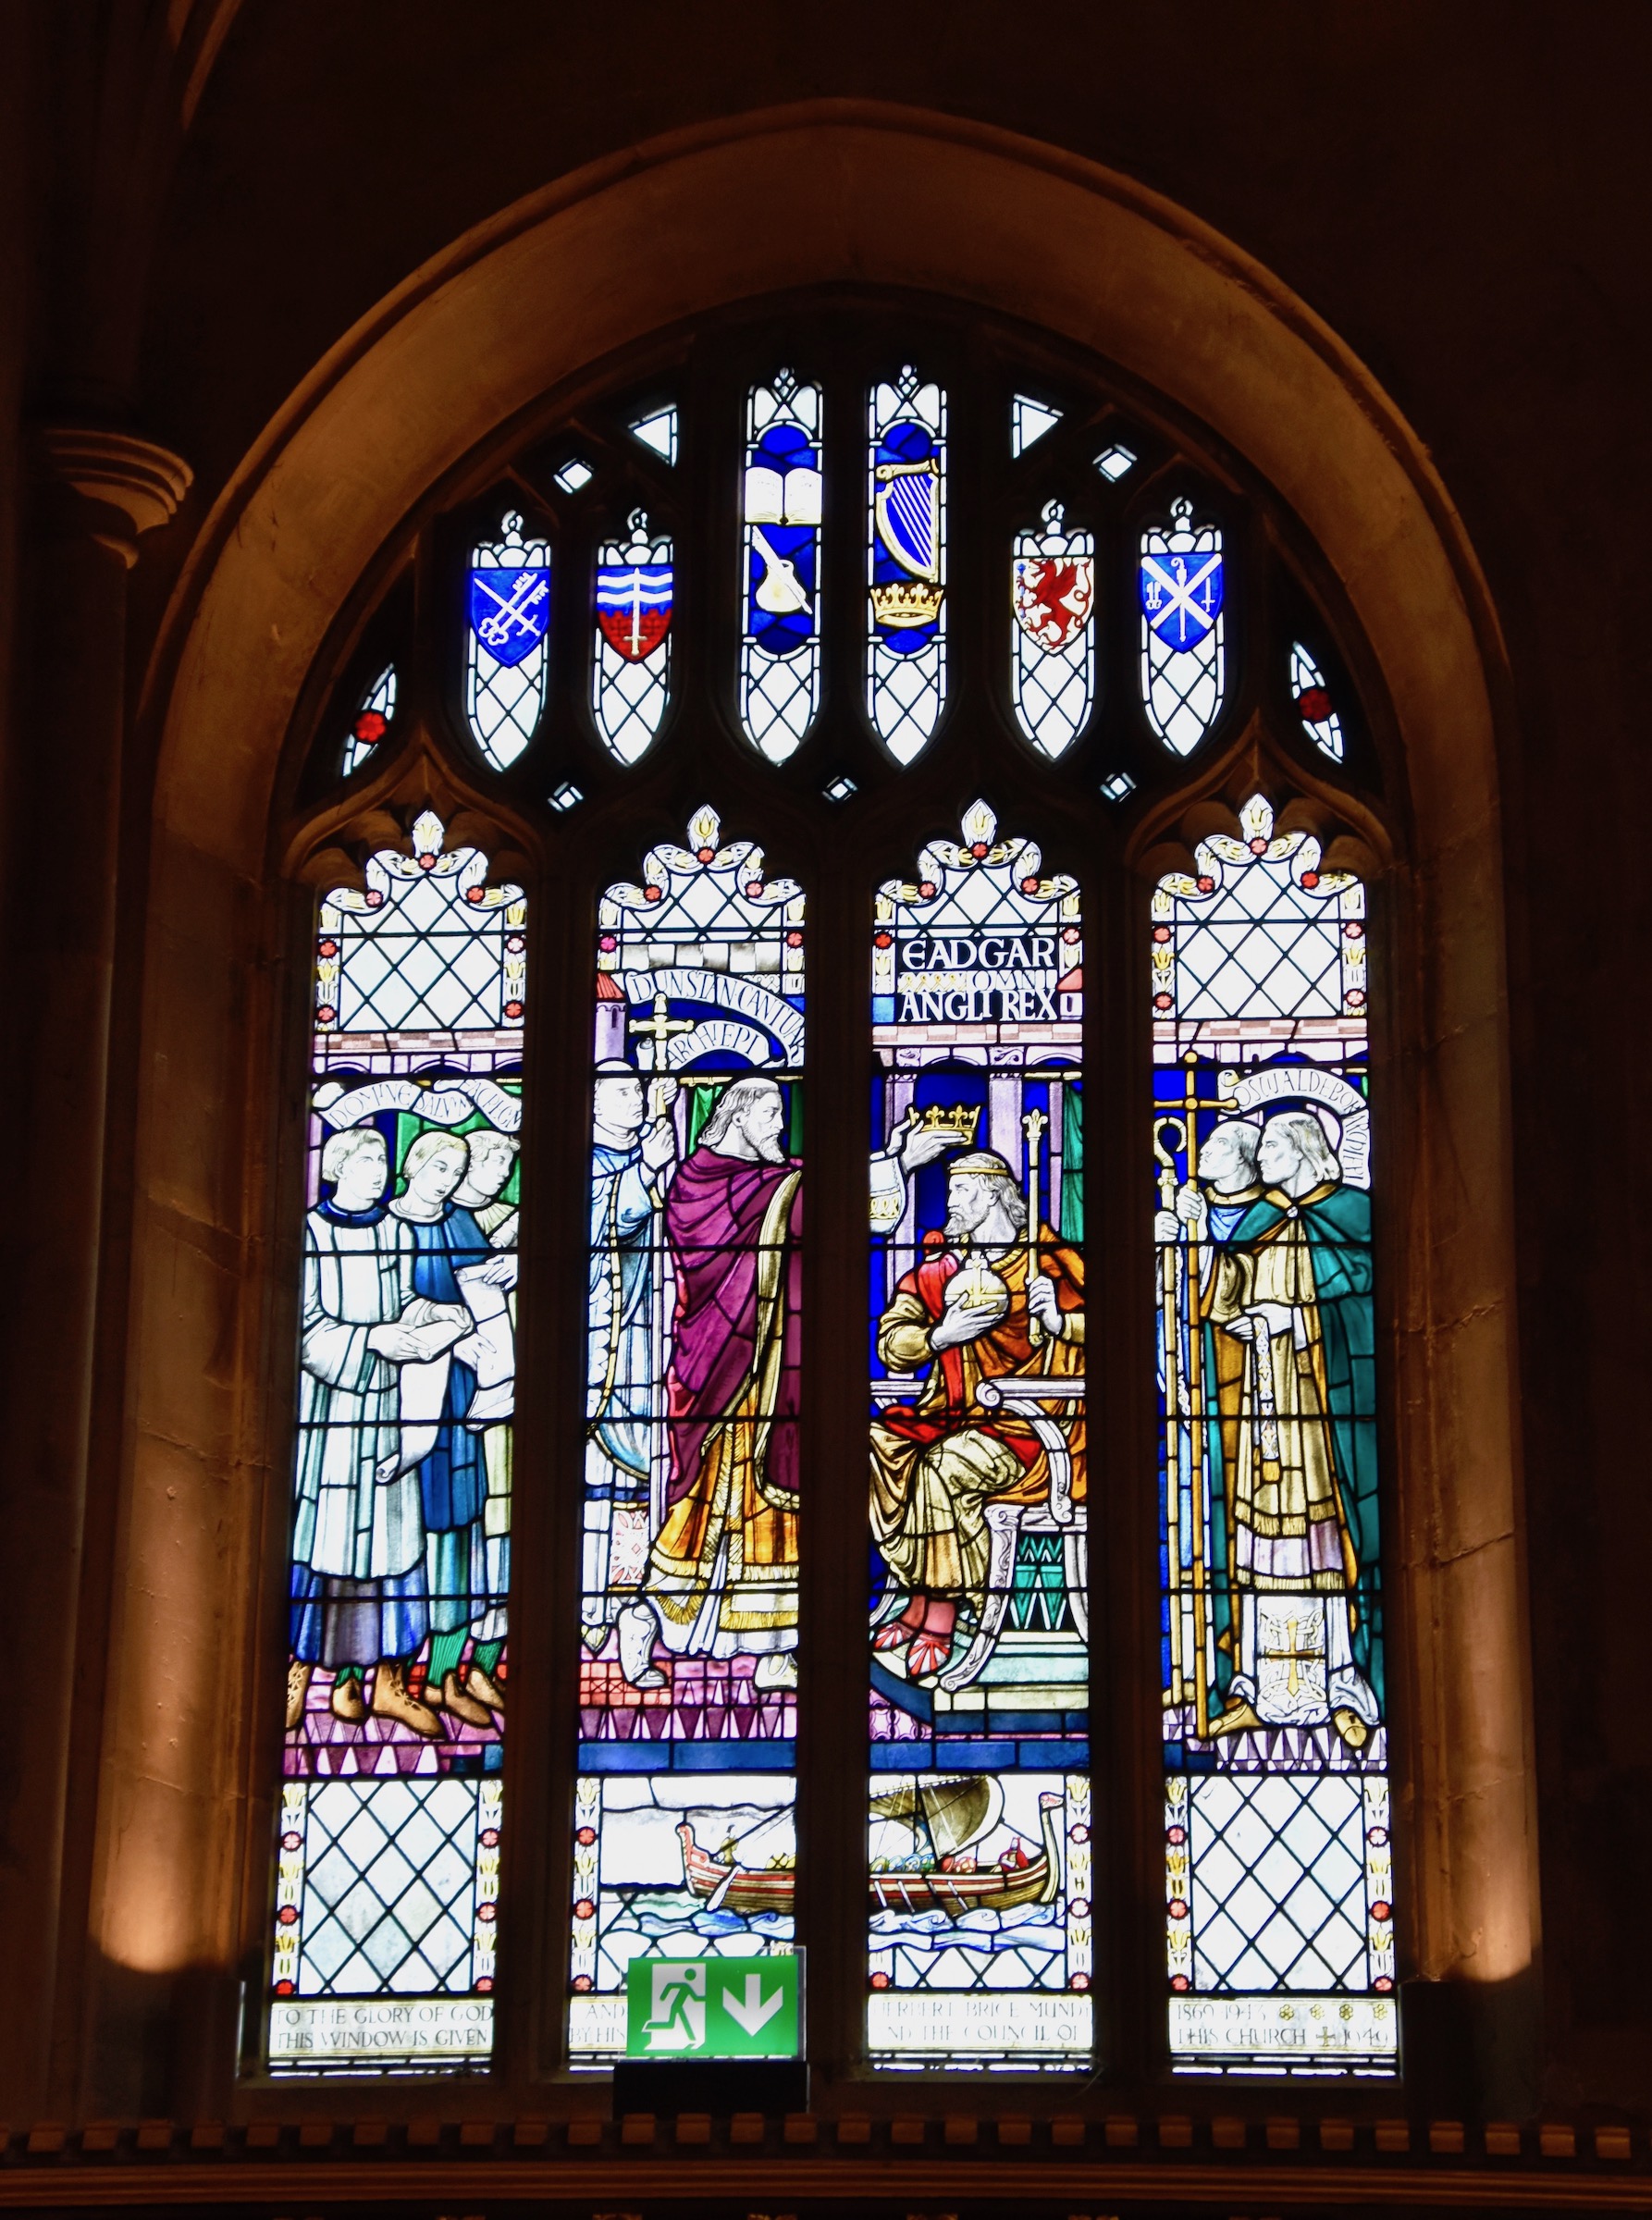 Edgar Coronation Window, Bath Abbey